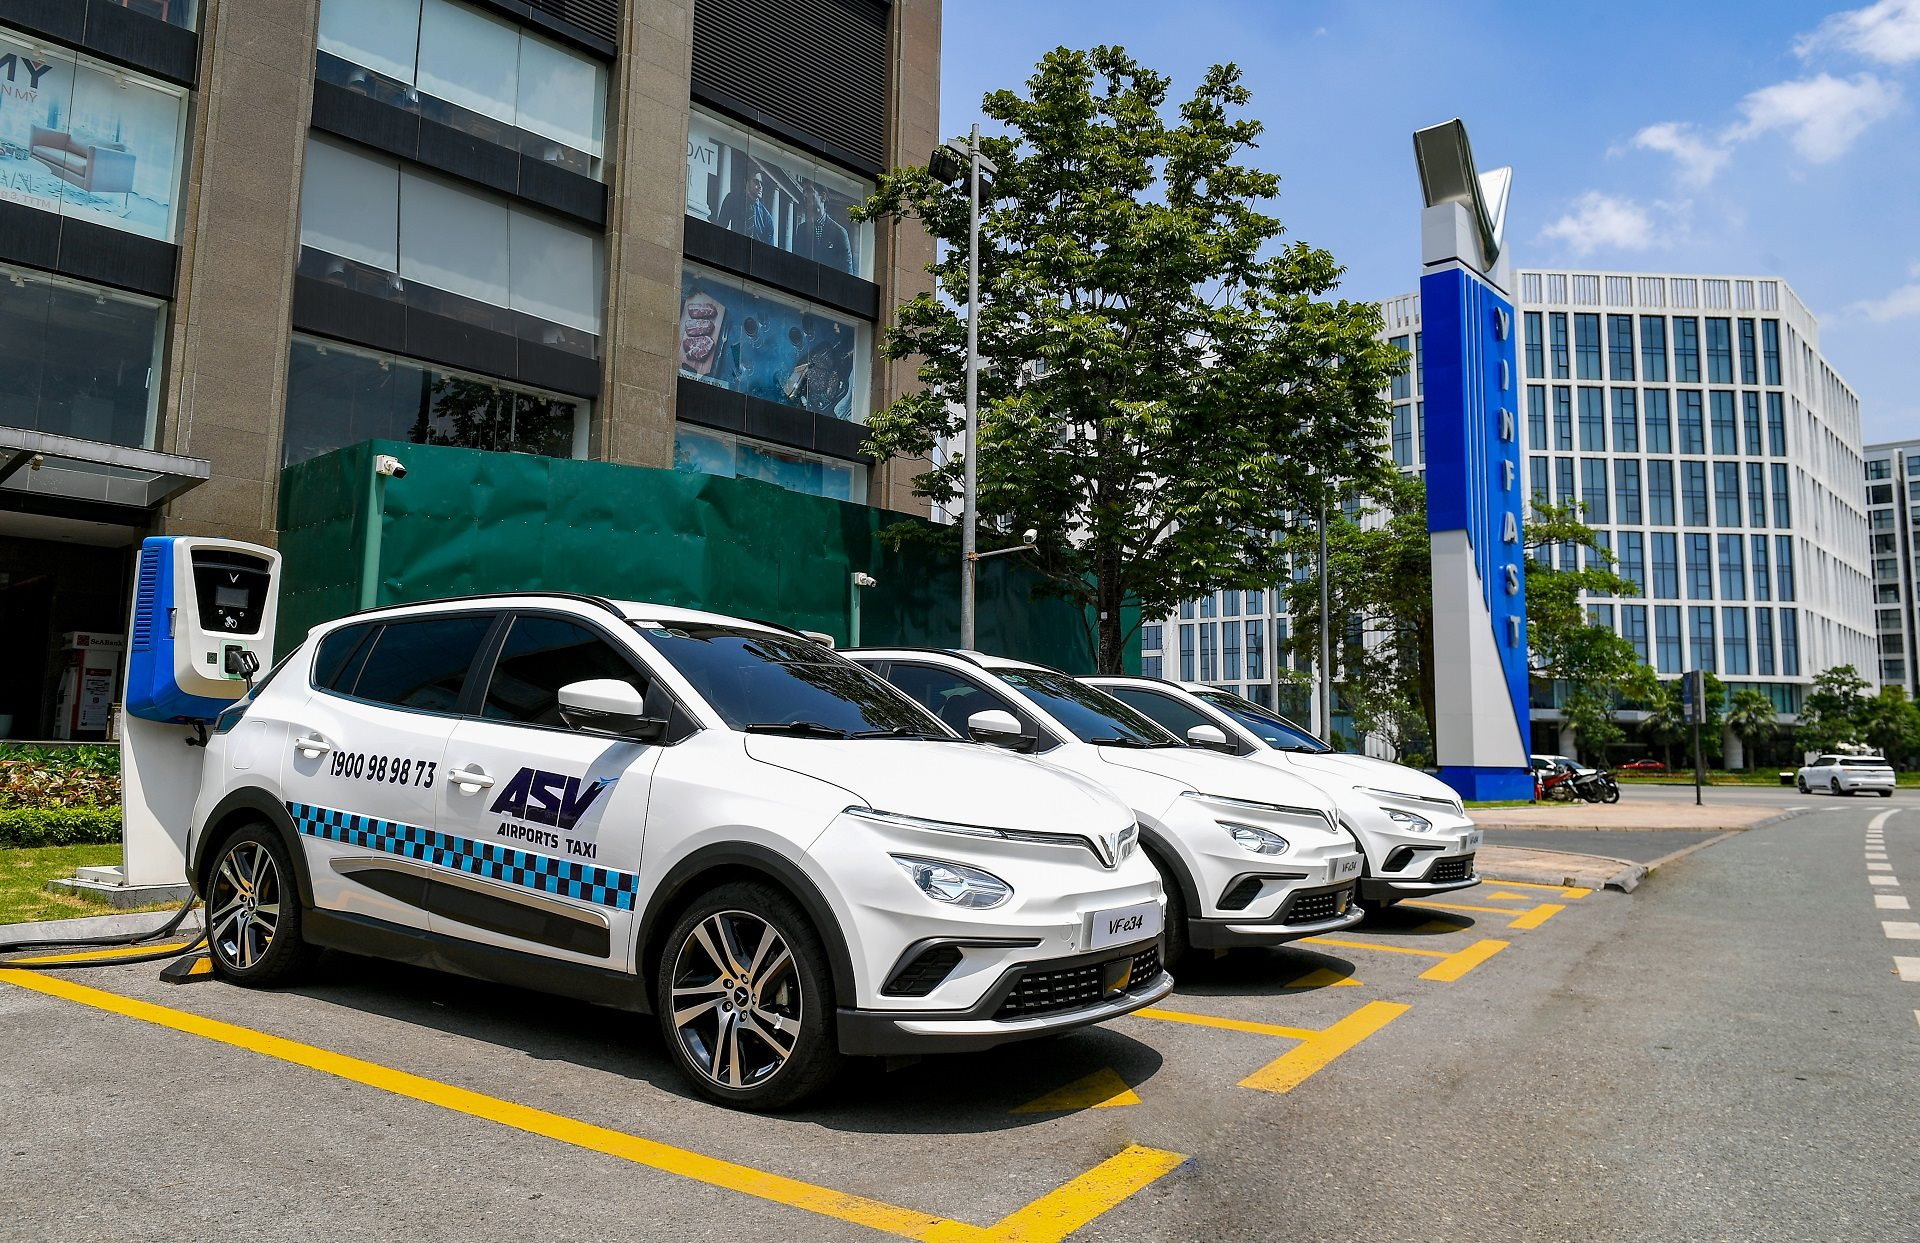 ASV Airports Taxi thuê 500 ô tô điện VinFast từ GMS, sẽ có taxi điện đưa đón khách đi Nội Bài, Tân Sơn Nhất